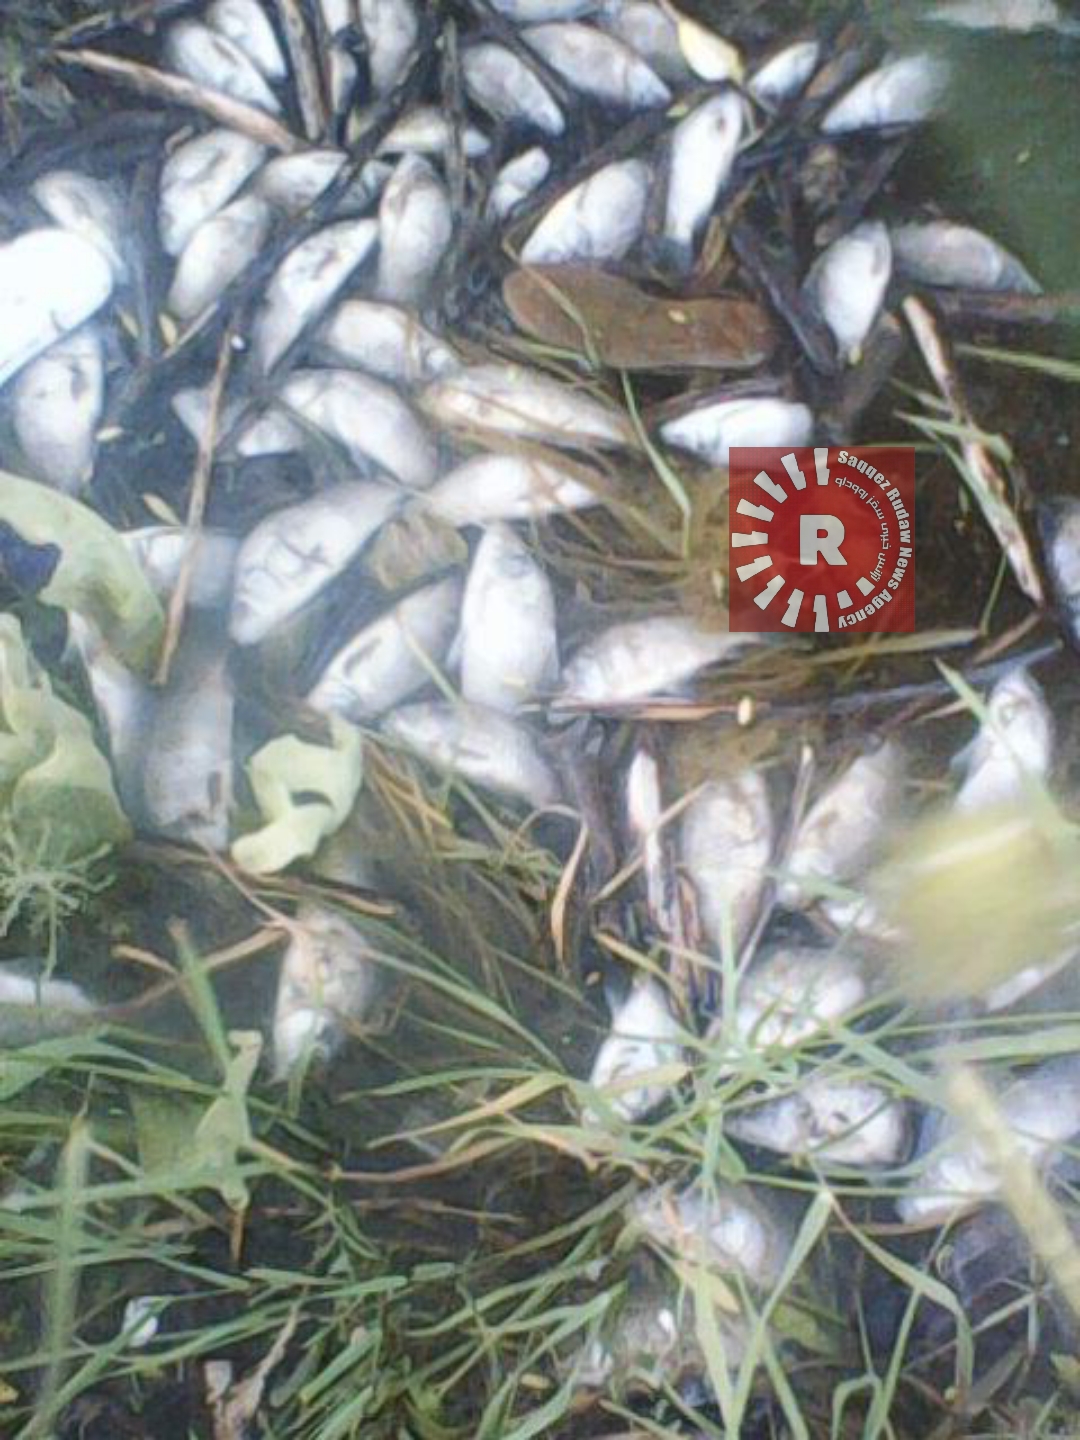 تبعات احتمالی زیست محیطی و بهداشتی ماهی های تلف شده سد چراغویس/ لزوم اقدام جدی توسط ادارات مرتبط